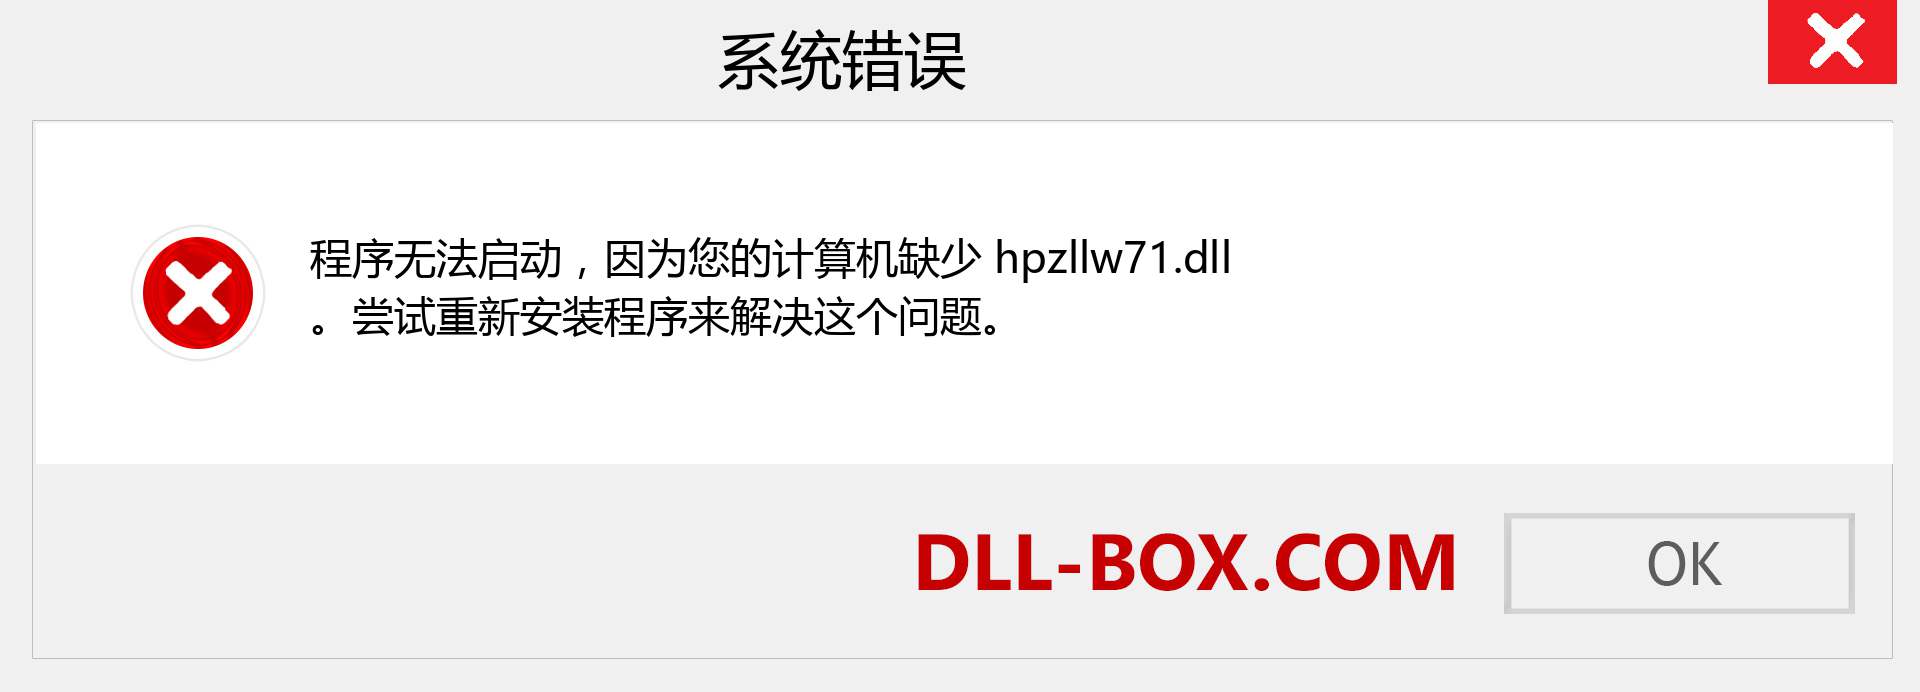 hpzllw71.dll 文件丢失？。 适用于 Windows 7、8、10 的下载 - 修复 Windows、照片、图像上的 hpzllw71 dll 丢失错误